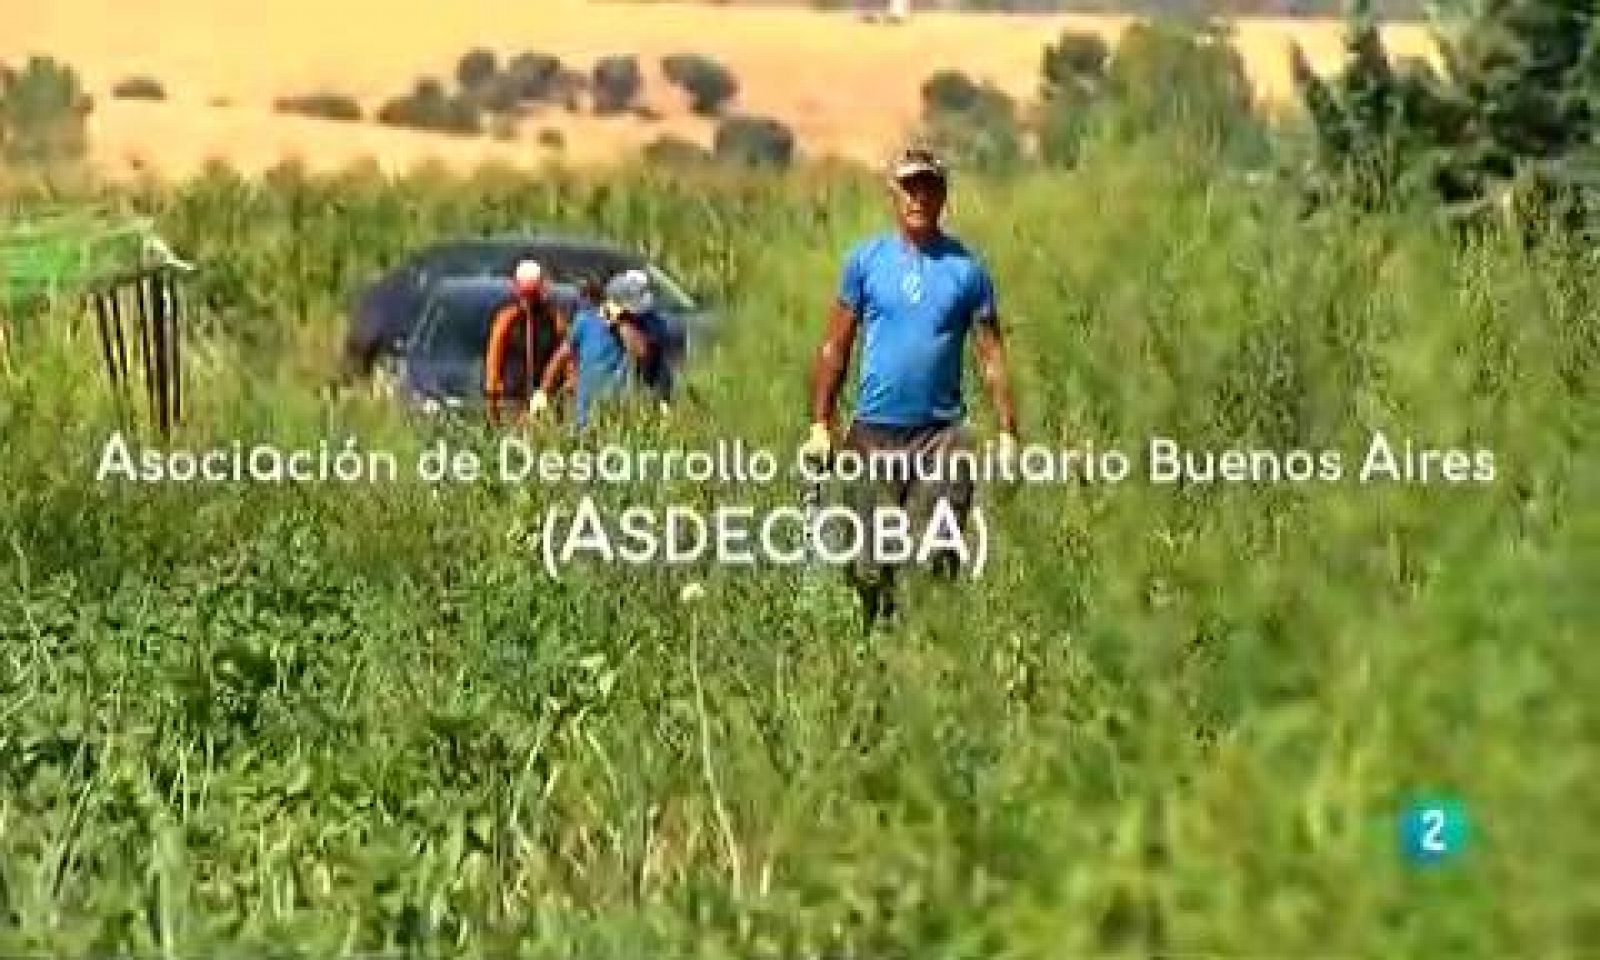 La aventura del saber Asociacion de Desarrollo Comunitario Buenos Aires ASDECOBA ecológica catering narcotrafico #AventuraSaberSociedad